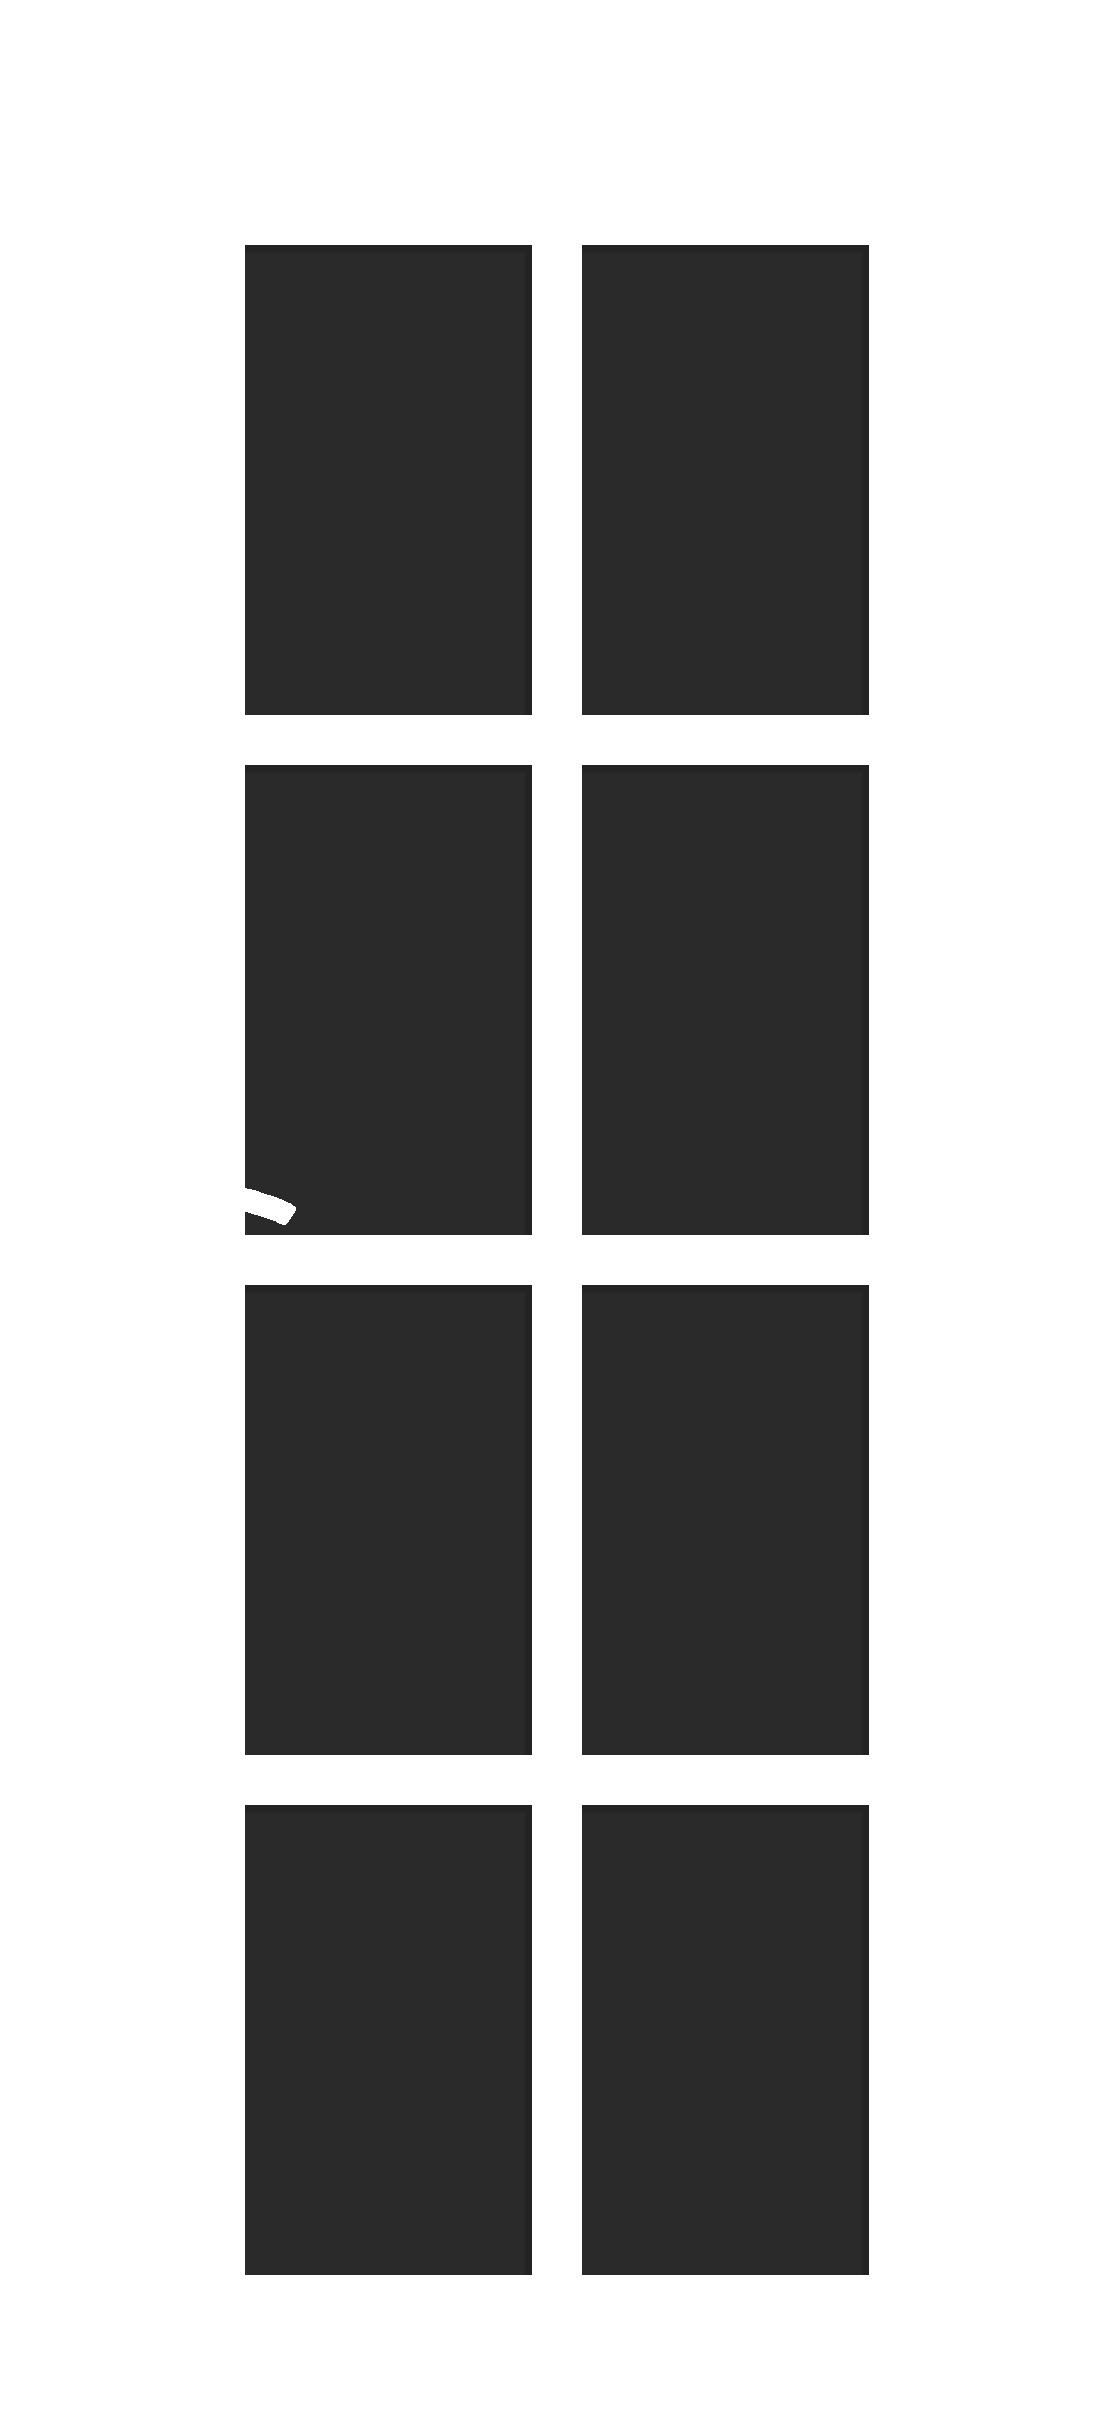 Межкомнатная дверь «Лондон 1». Вид отделки Дуб Бьянко Остекление: Черный лак Cтандартный наличник